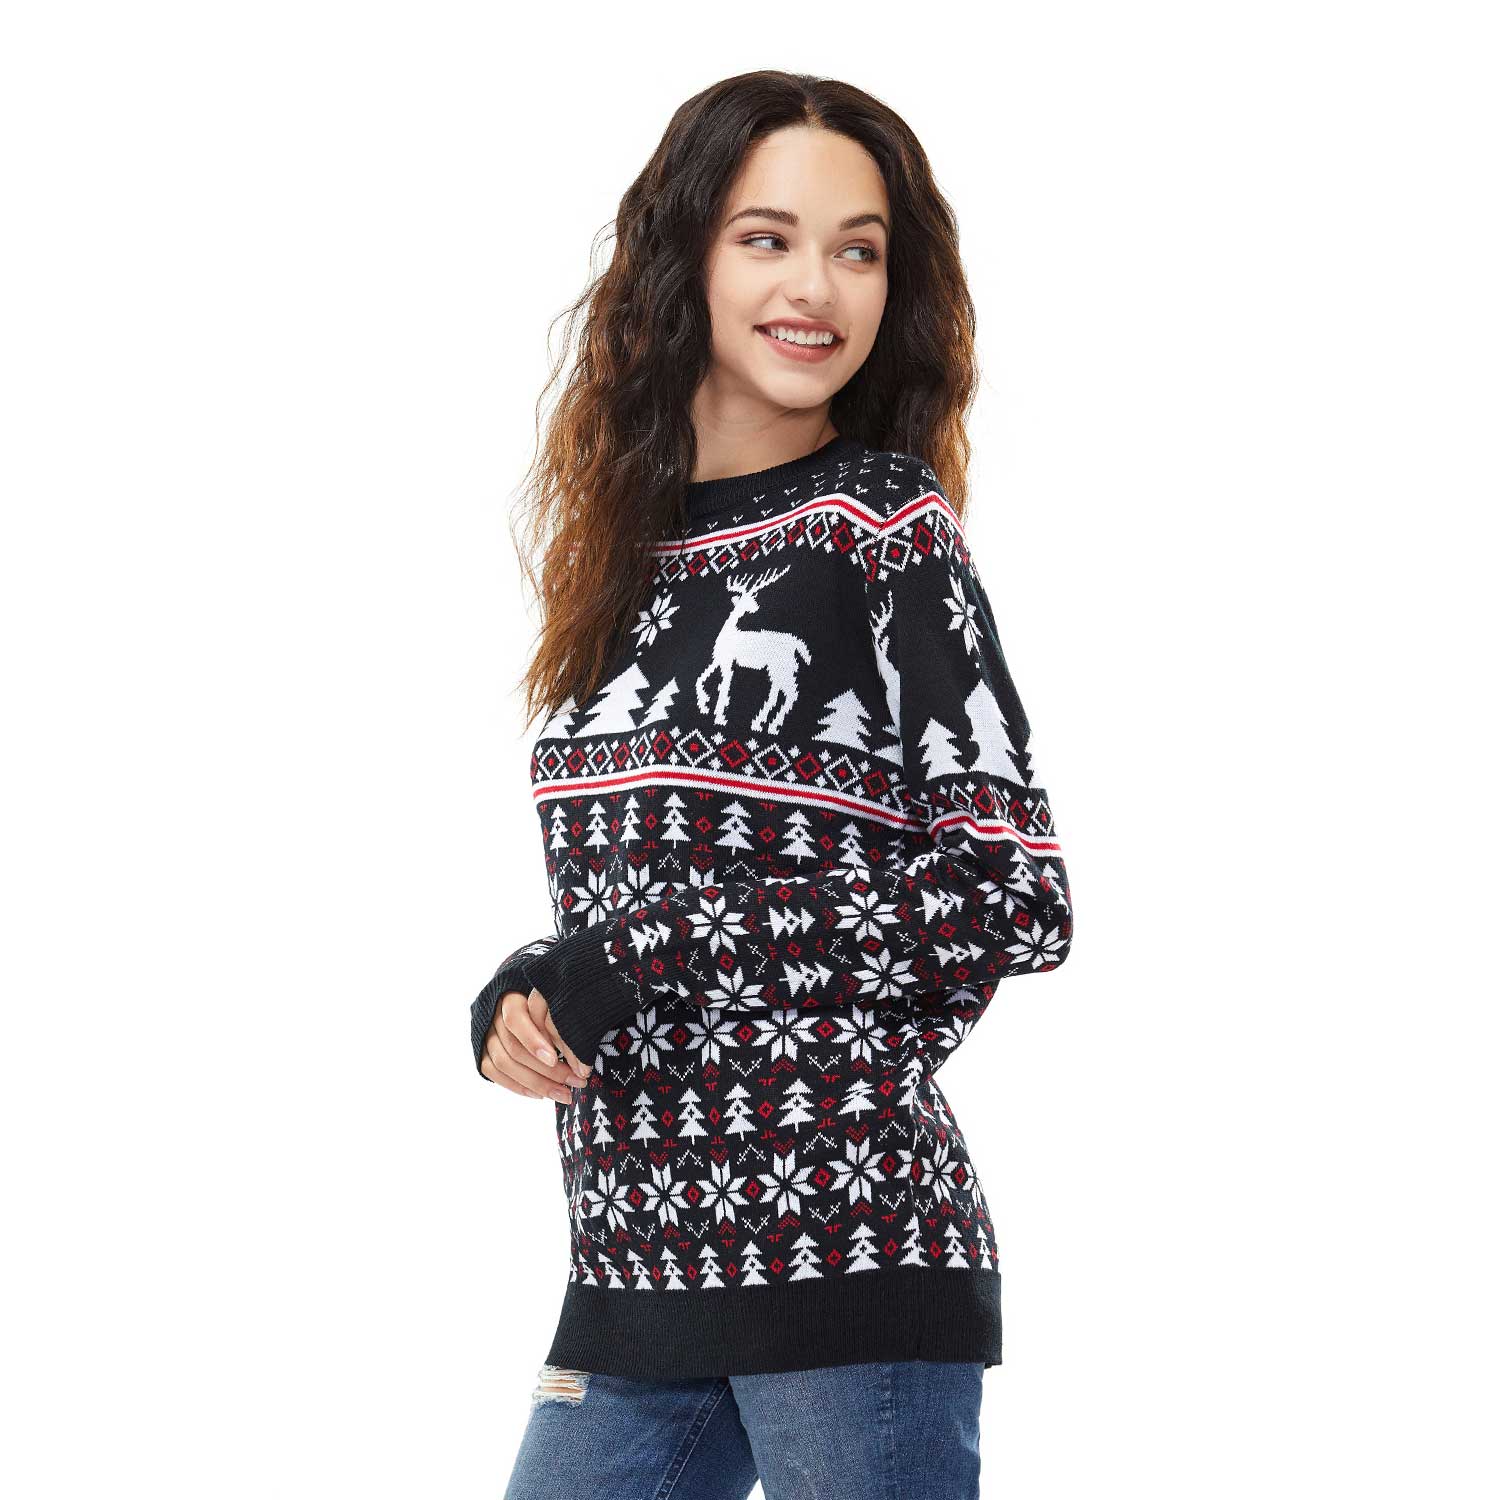 Reindeer and Snowflakes on Fleek Black Mens Funny Christmas Sweater